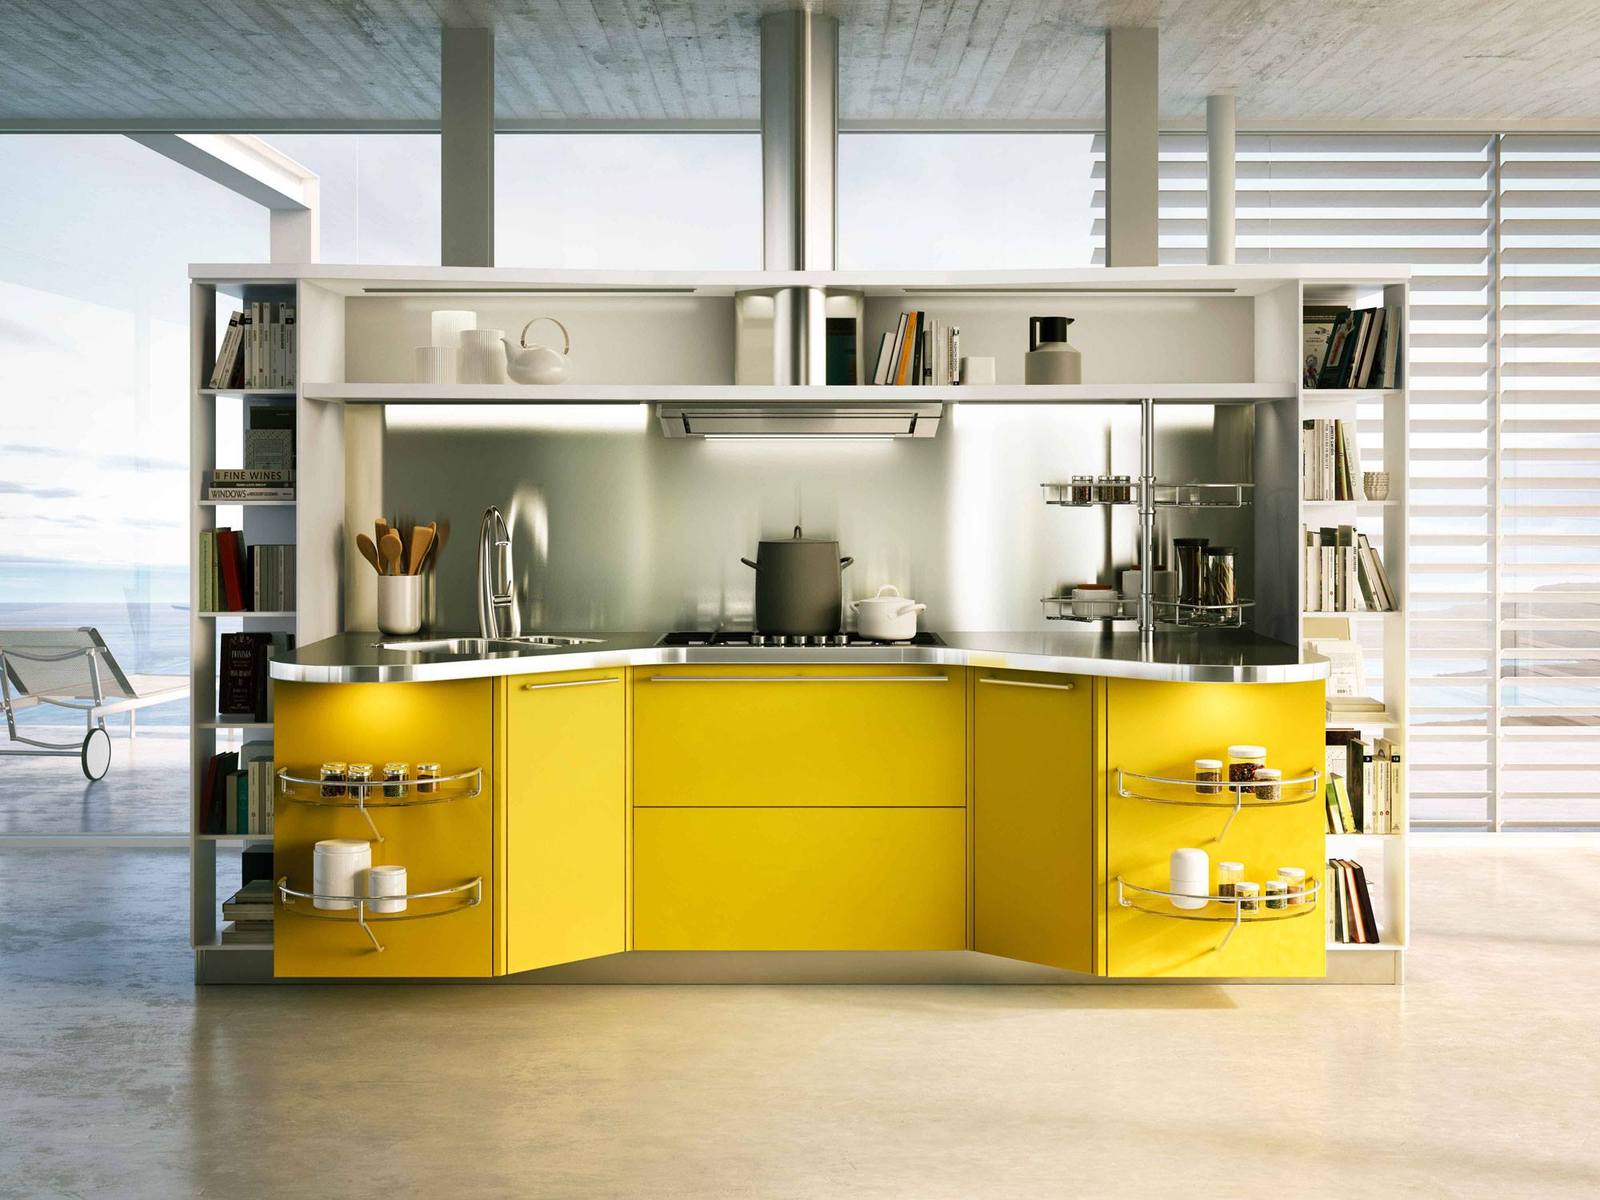 suspended-kitchen-skyline-2.0-by-snaidero-1.jpg